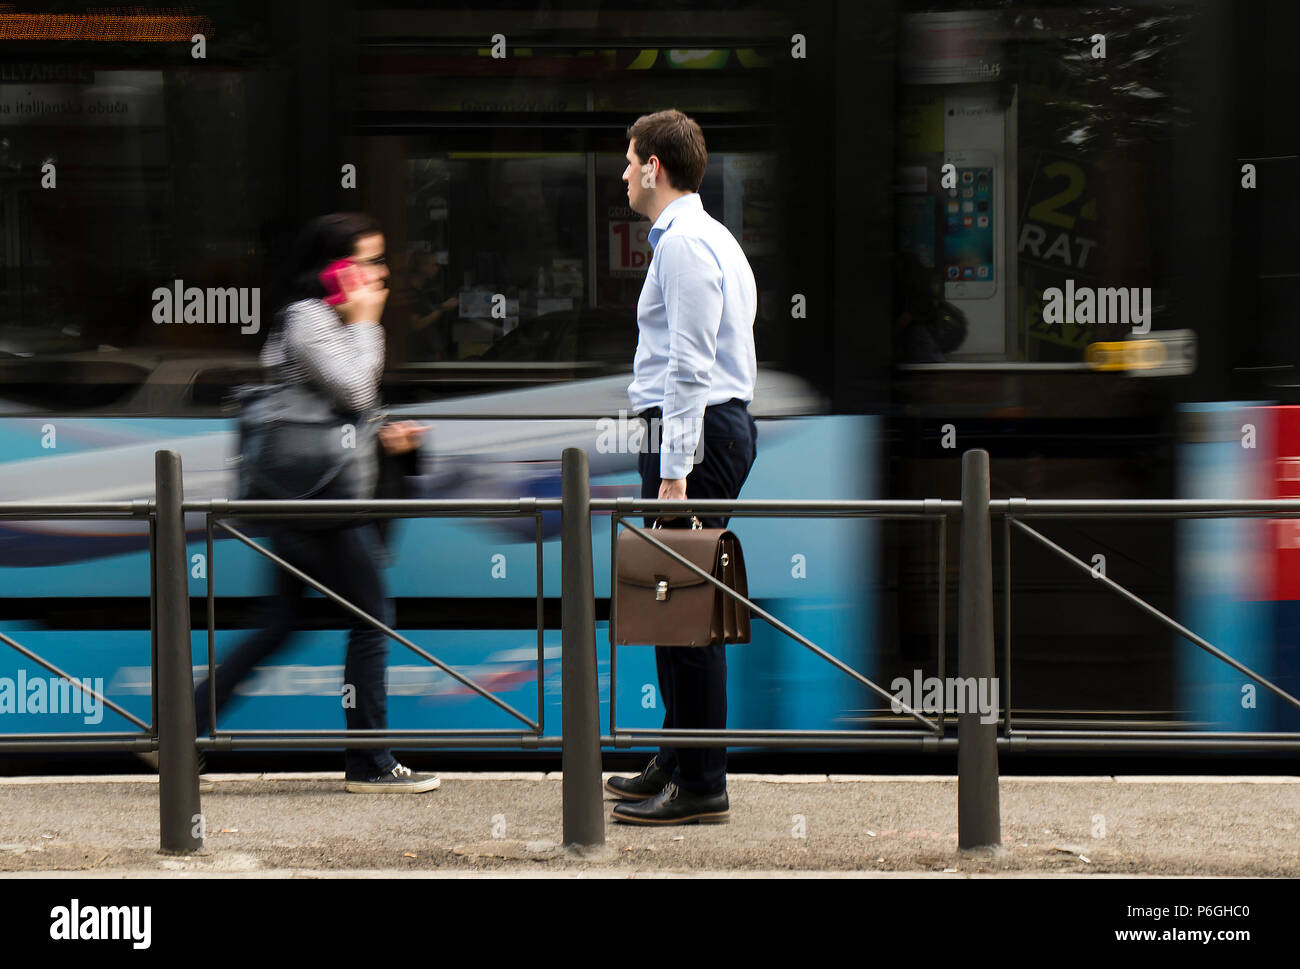 Belgrad, Serbien - April 24, 2018: Ein white-collar Mann mit Aktentasche steht an einer Bushaltestelle und Warten auf öffentliche Verkehrsmittel mit verschwommenen motio Stockfoto